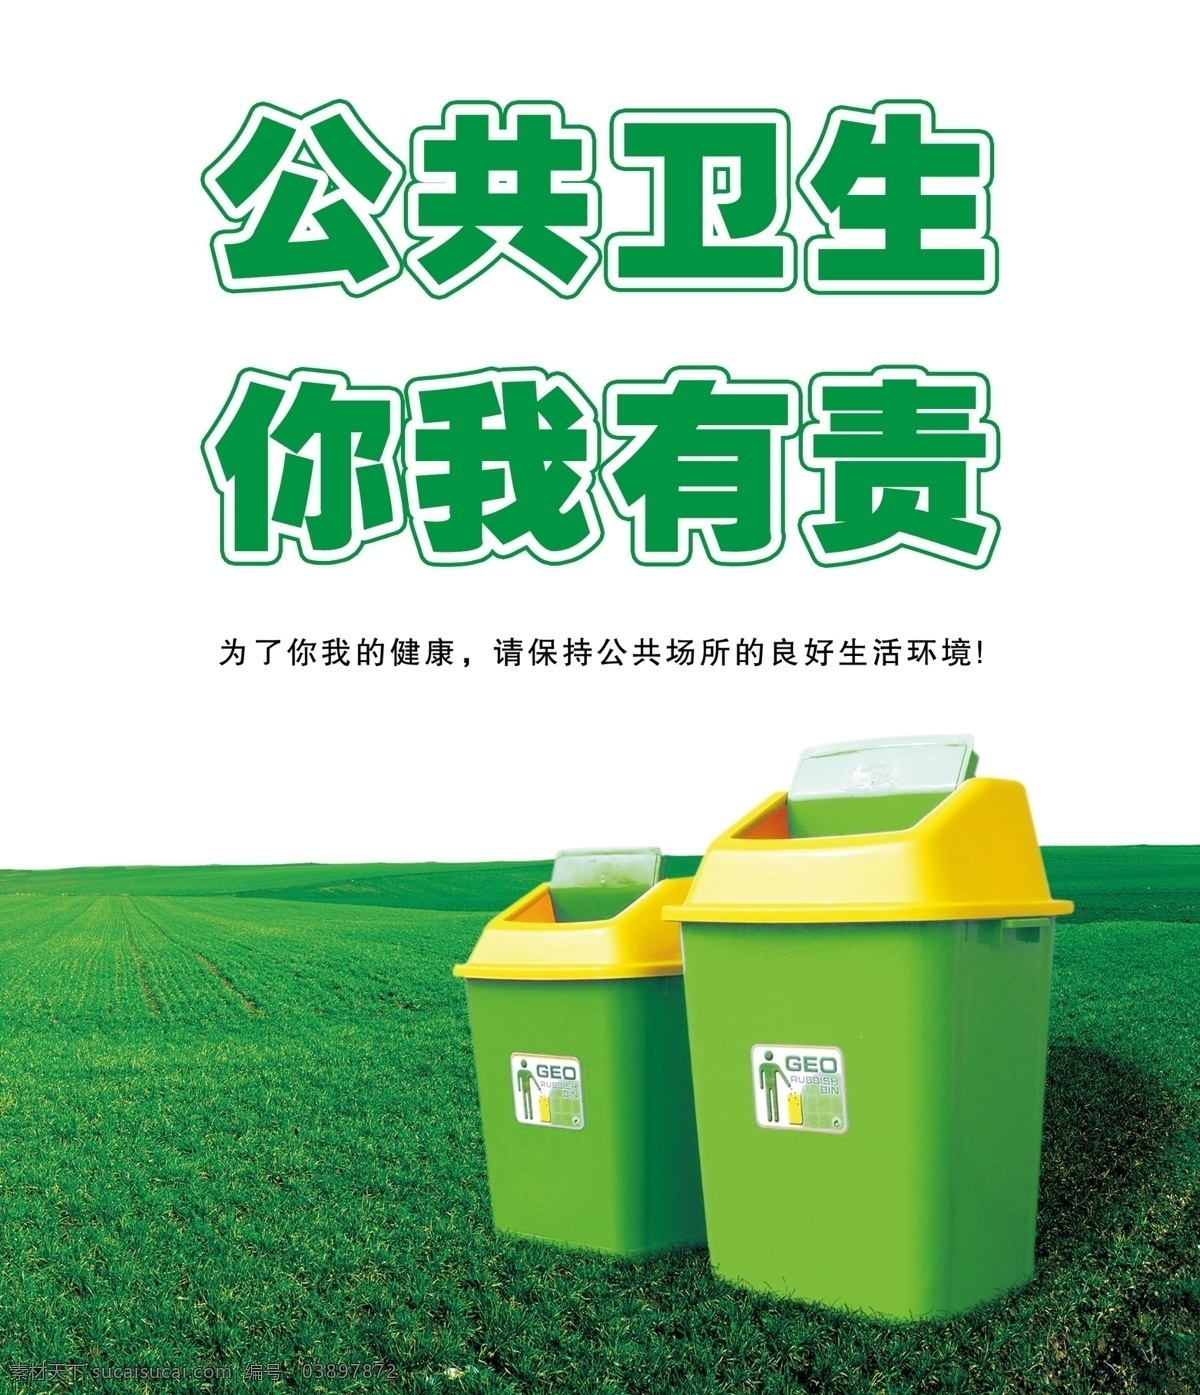 公共卫生 你我有责 卫生 垃圾 垃圾桶 垃圾分类 分类 公共资源 资源 公共 公共场合 绿色 环保 公益广告 绿色环保 绿色公益 绿色公益广告 环保公益广告 环保公益 生活 生活环境 良好生活 良好生活环境